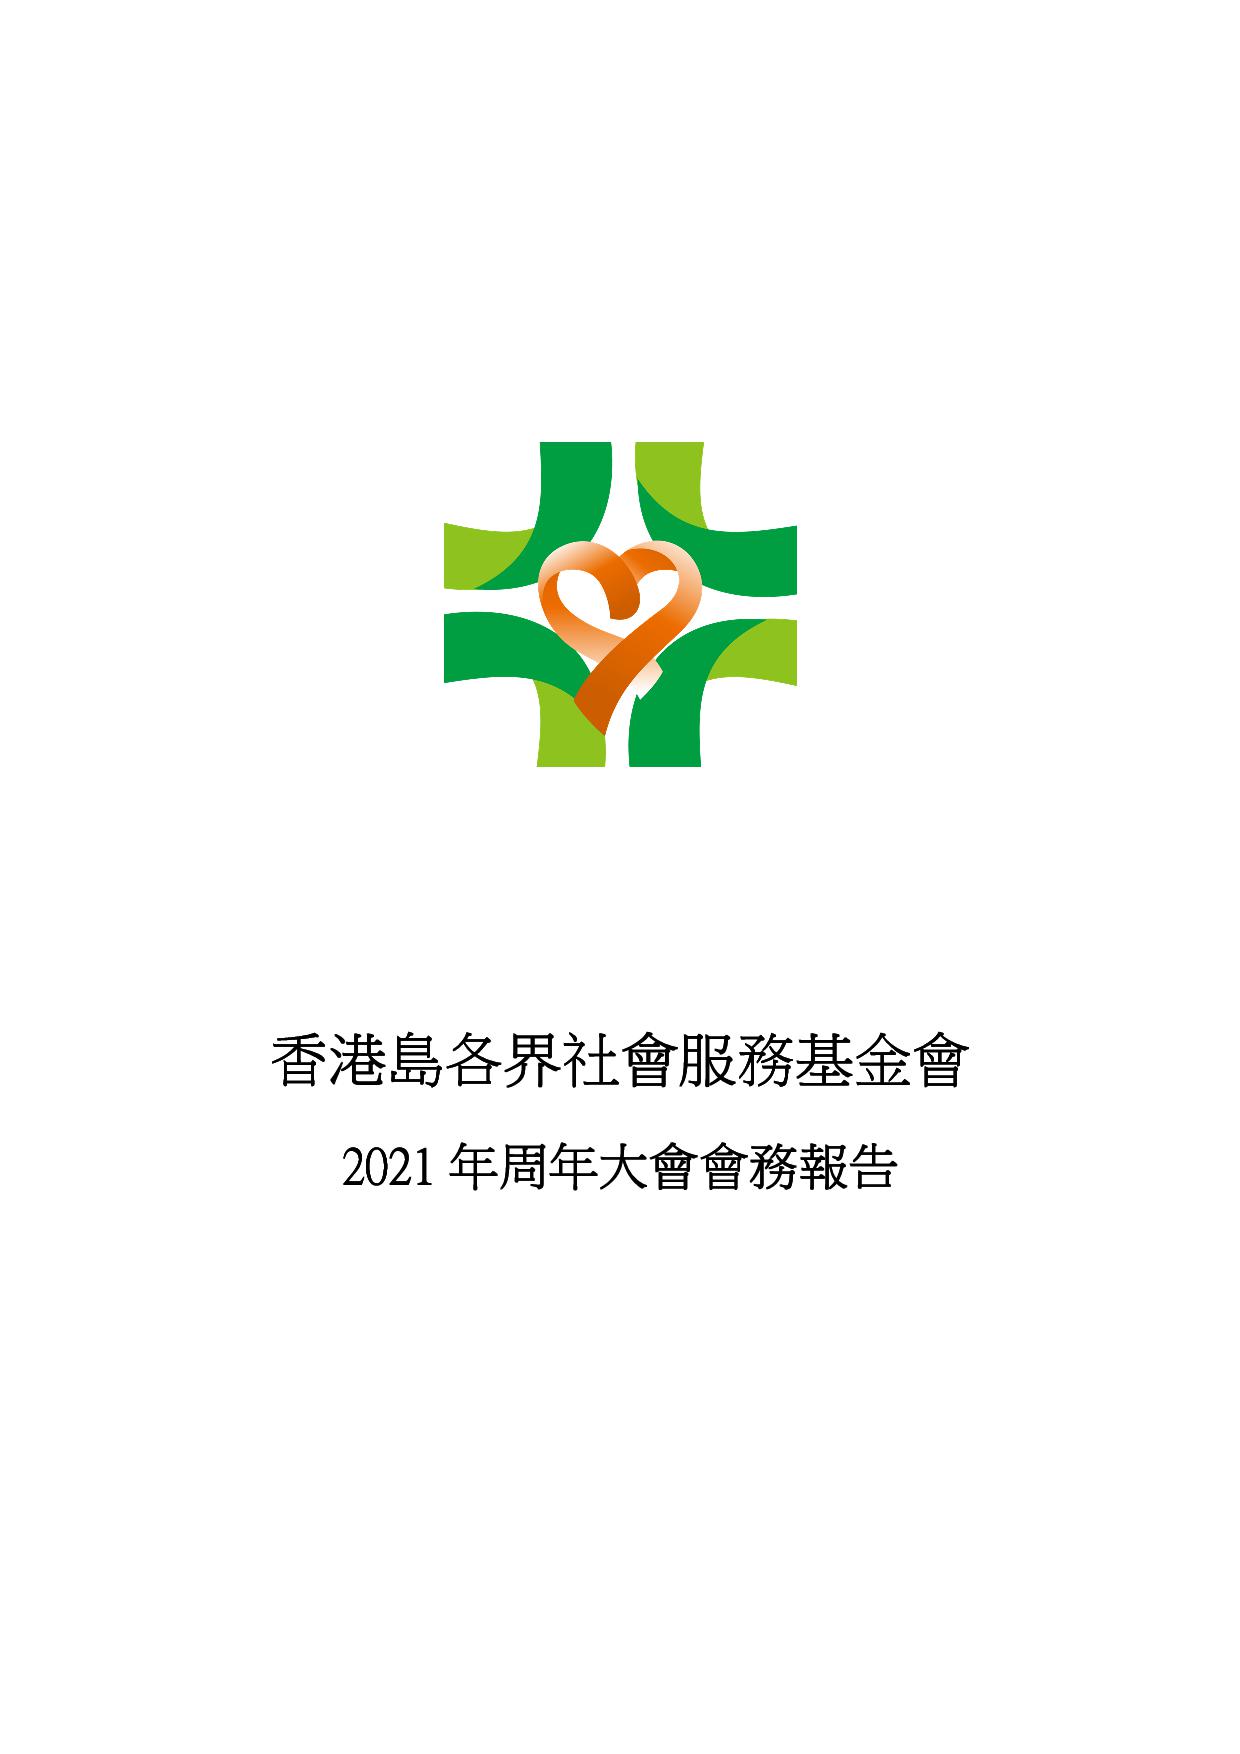 香港島各界社會服務基金會 ( 2020-2021年度會務報告)